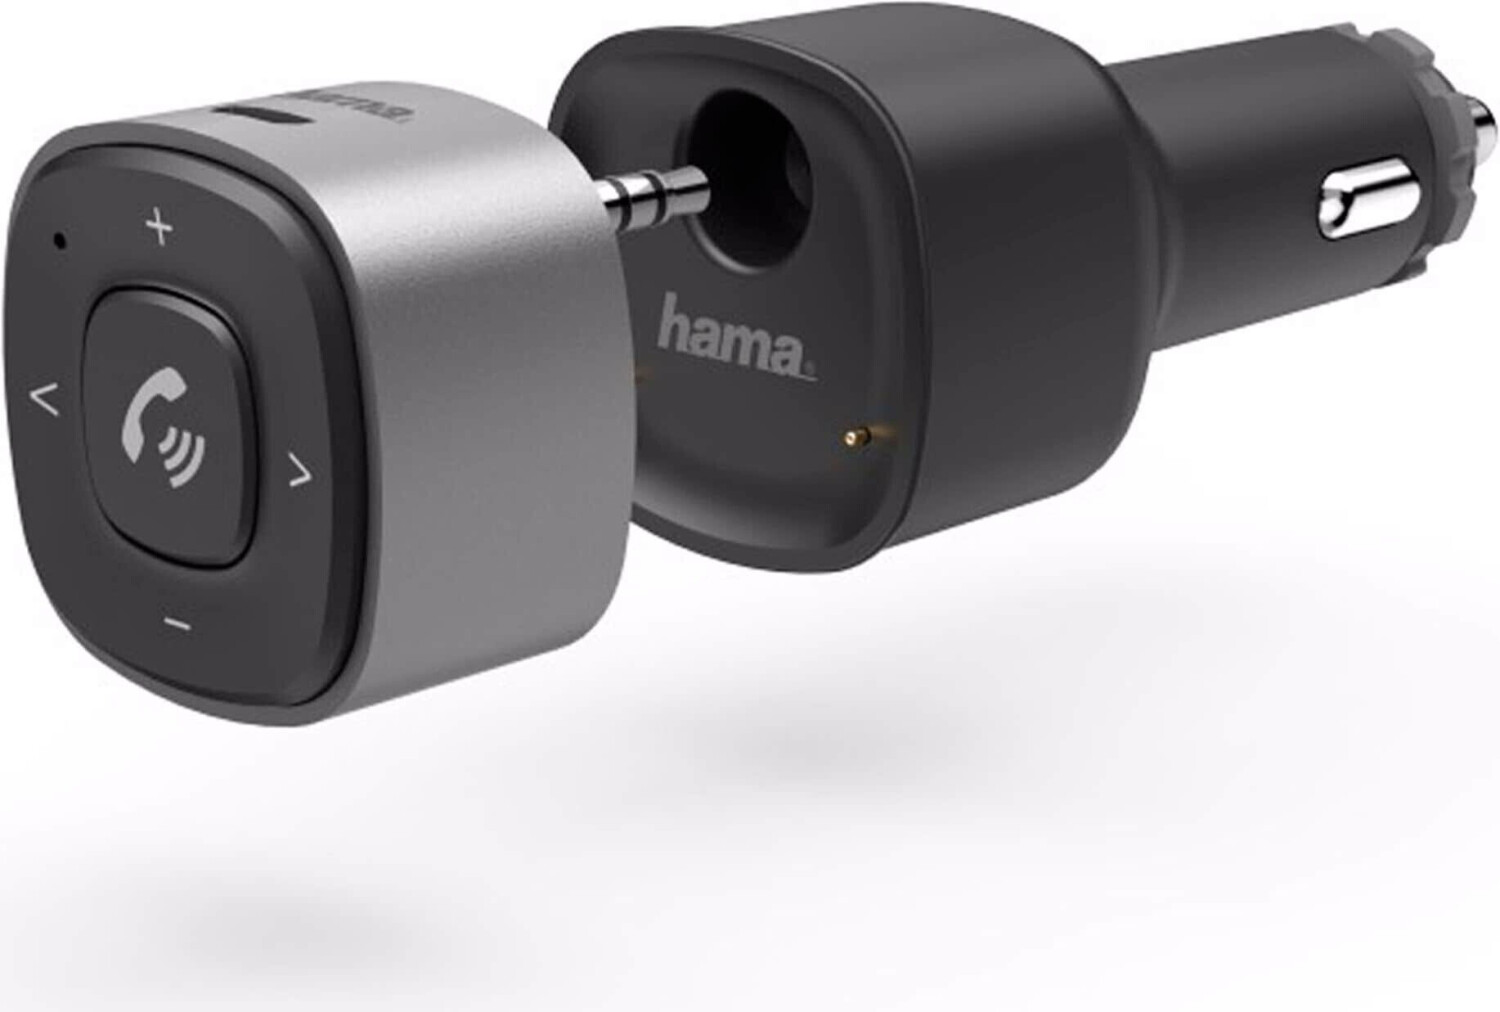 Hama Bluetooth-Receiver für Kfz, mit 3,5-mm-Stecker und USB